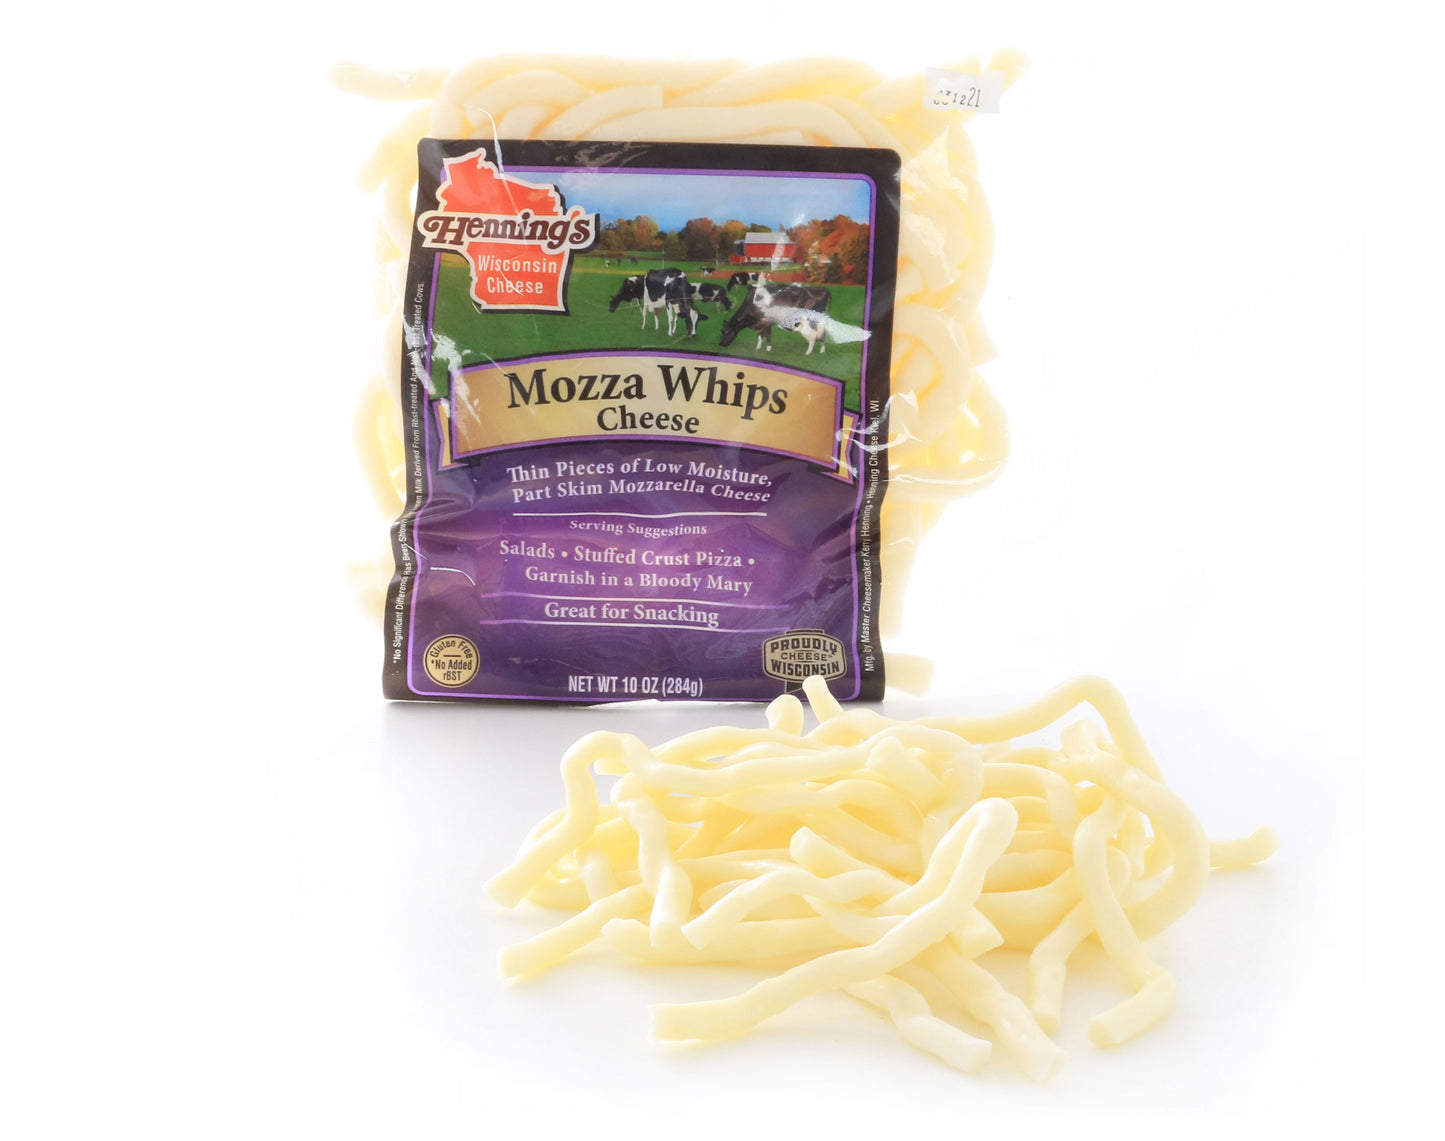 10 ounce bag of mozzarella cheese whips